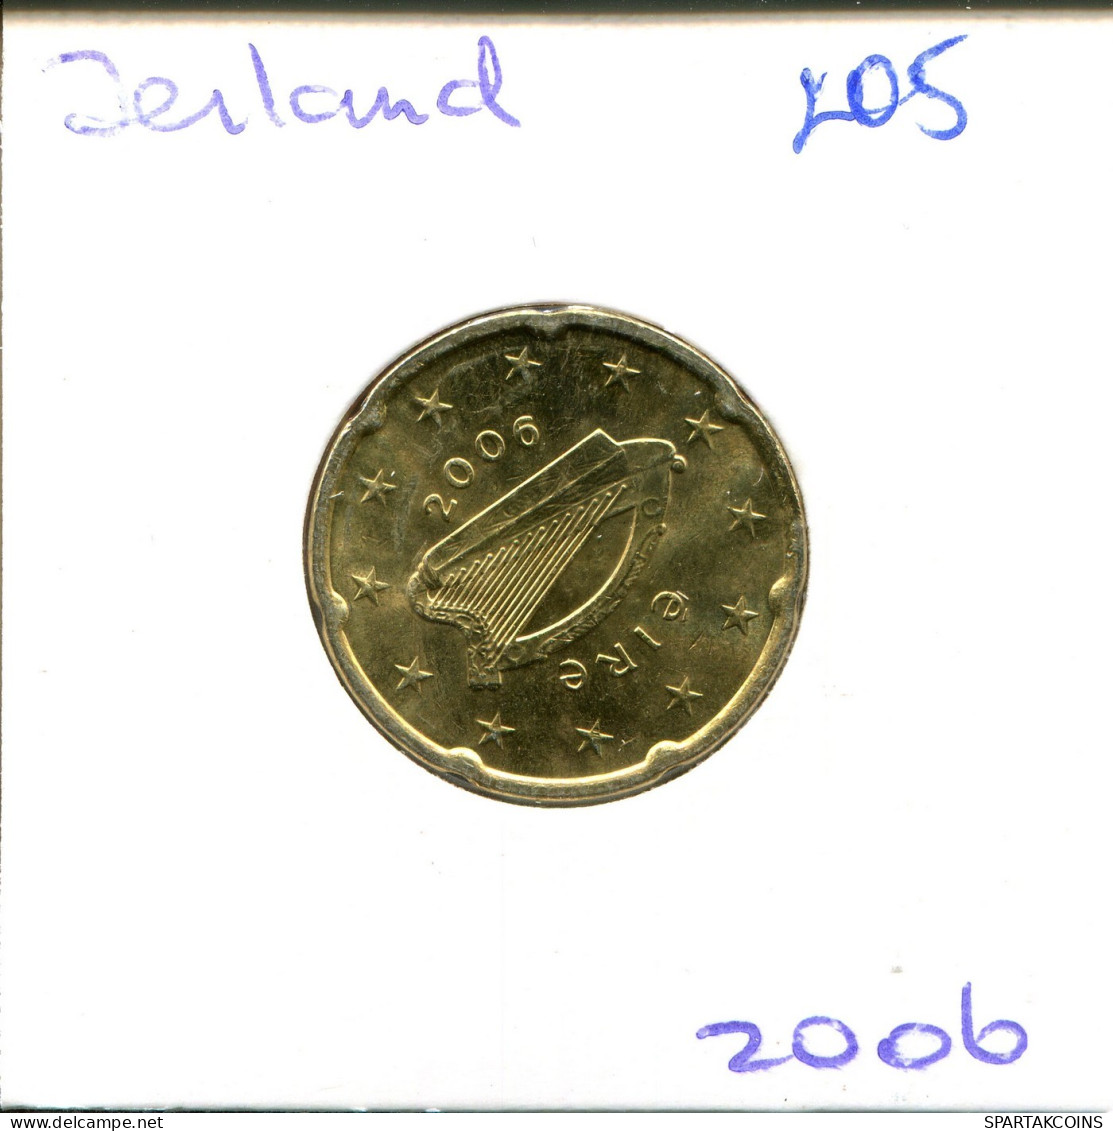 20 EURO CENTS 2006 IRLAND IRELAND Münze #EU205.D.A - Ierland